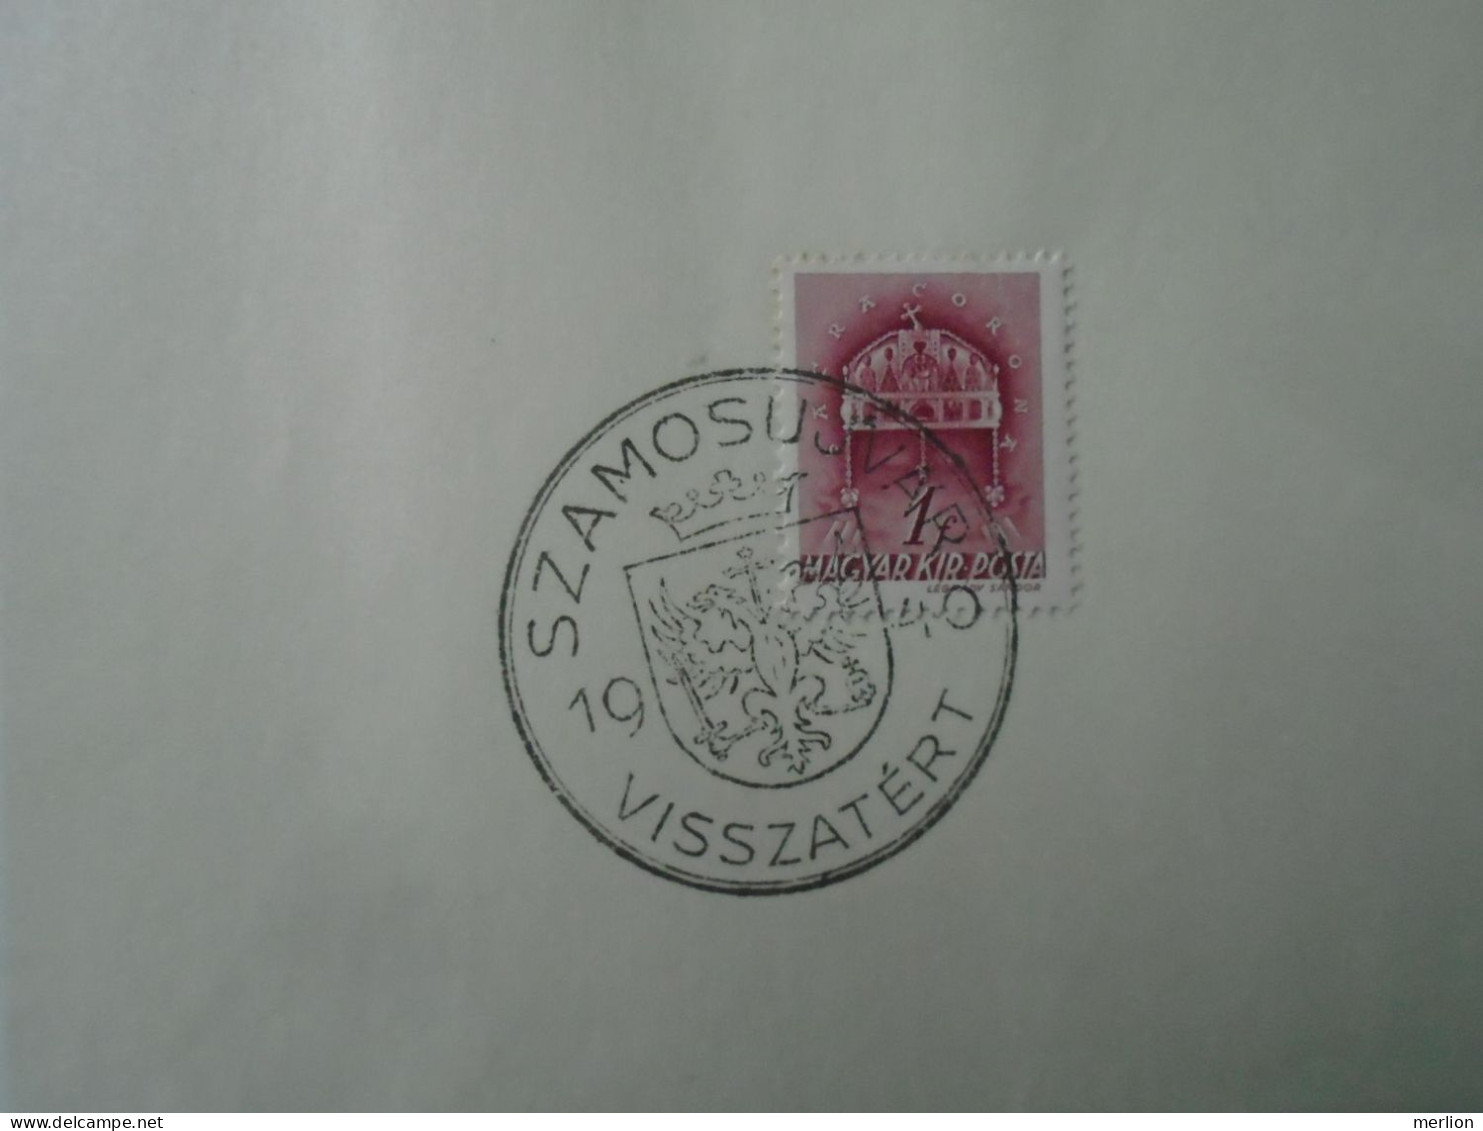 ZA451.59  Hungary -Szamosújvár - Visszatért -Commemorative Postmark 1940 - Postmark Collection